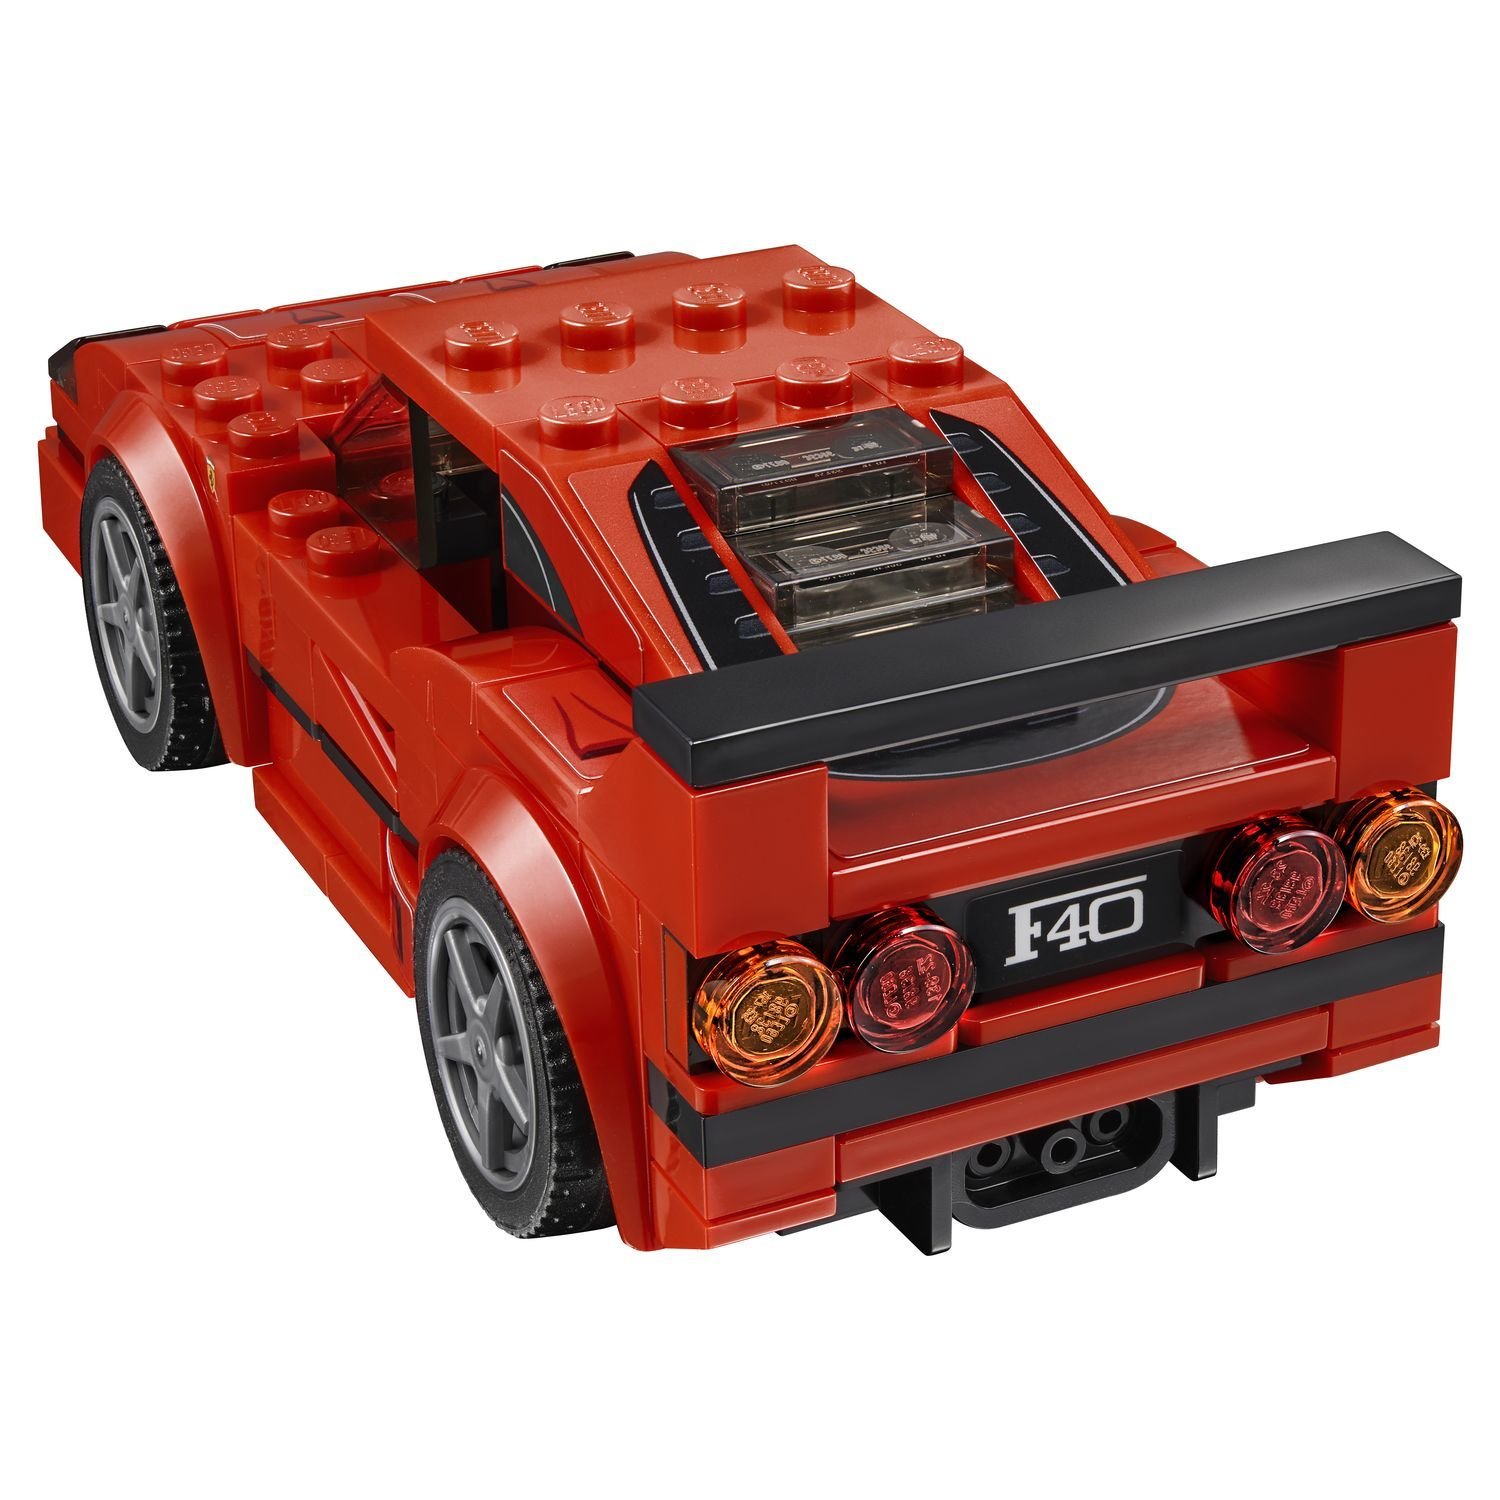 Lego Speed Champions 75890 Ferrari F40 Competizione